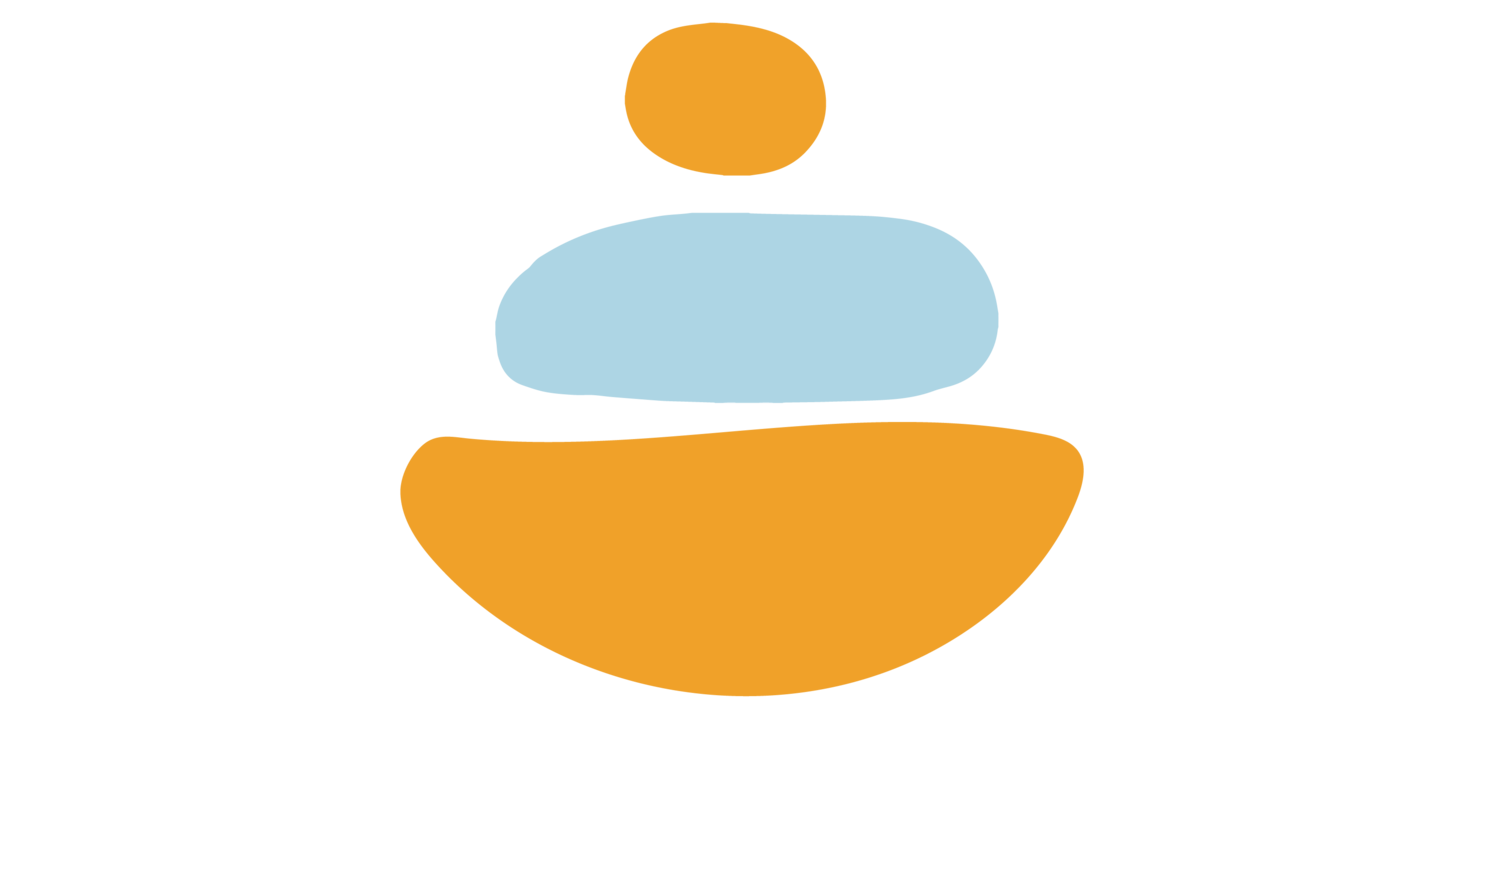 Jackie Frederick-Berner